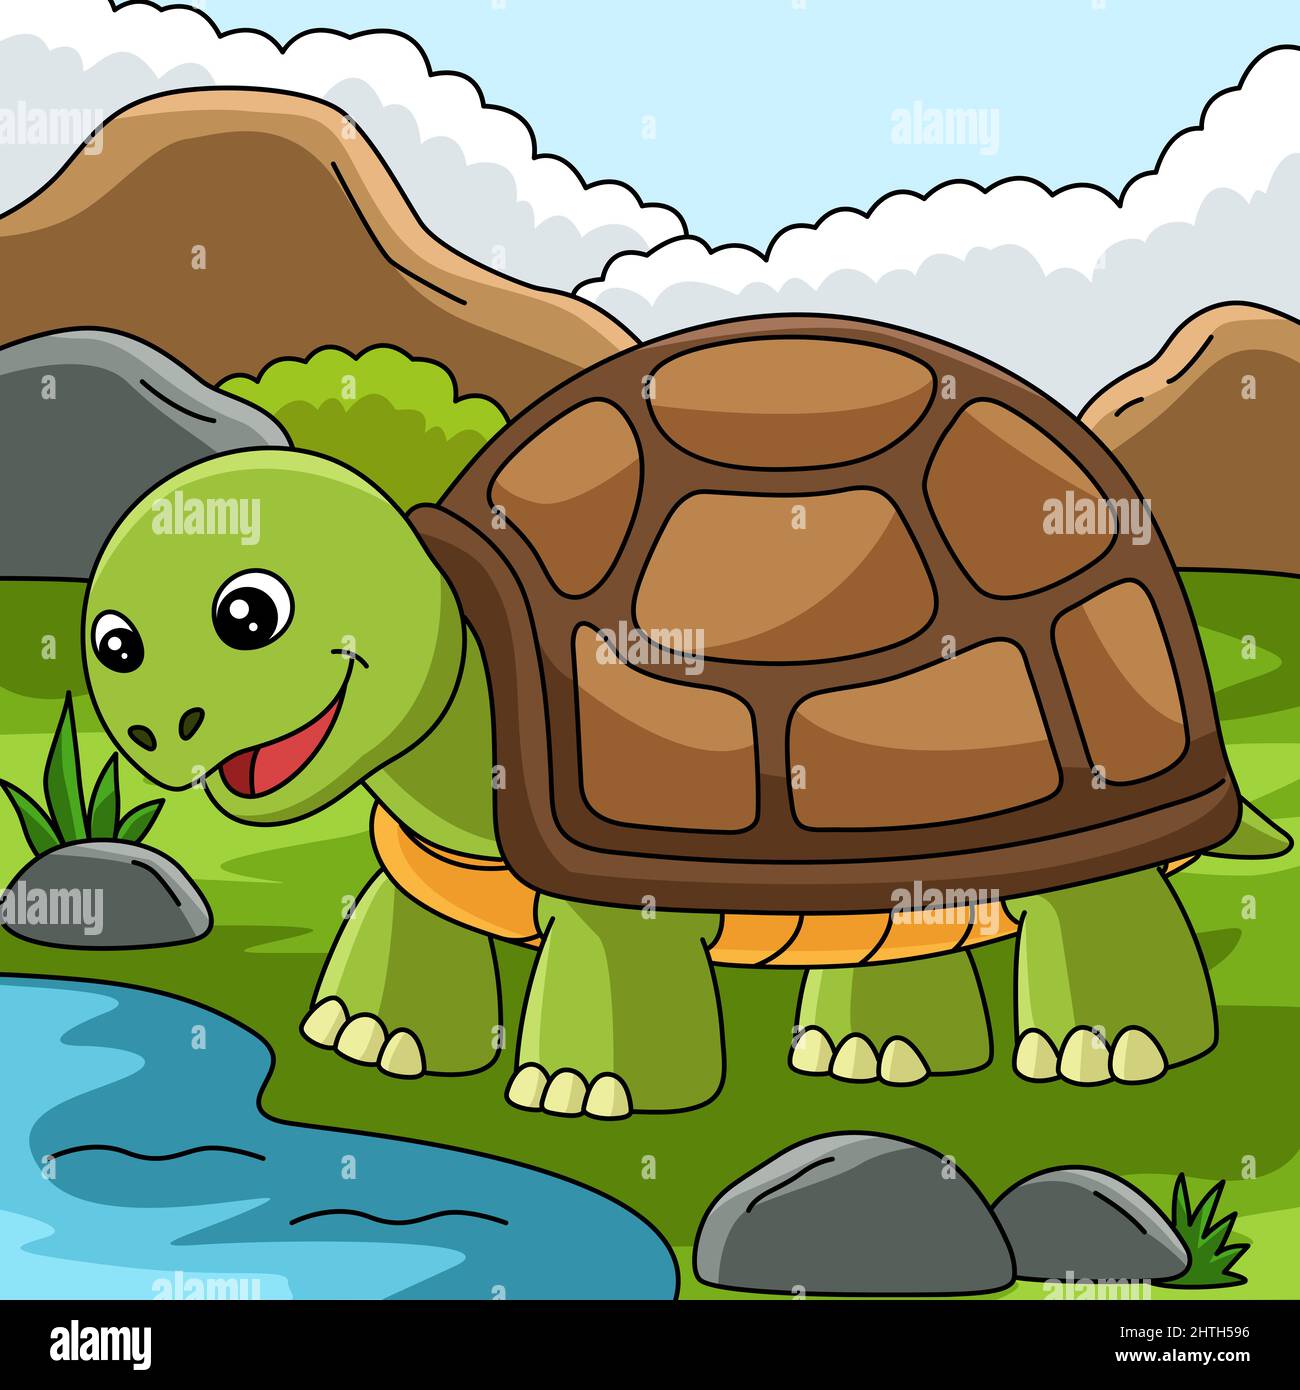 clip art tortoise